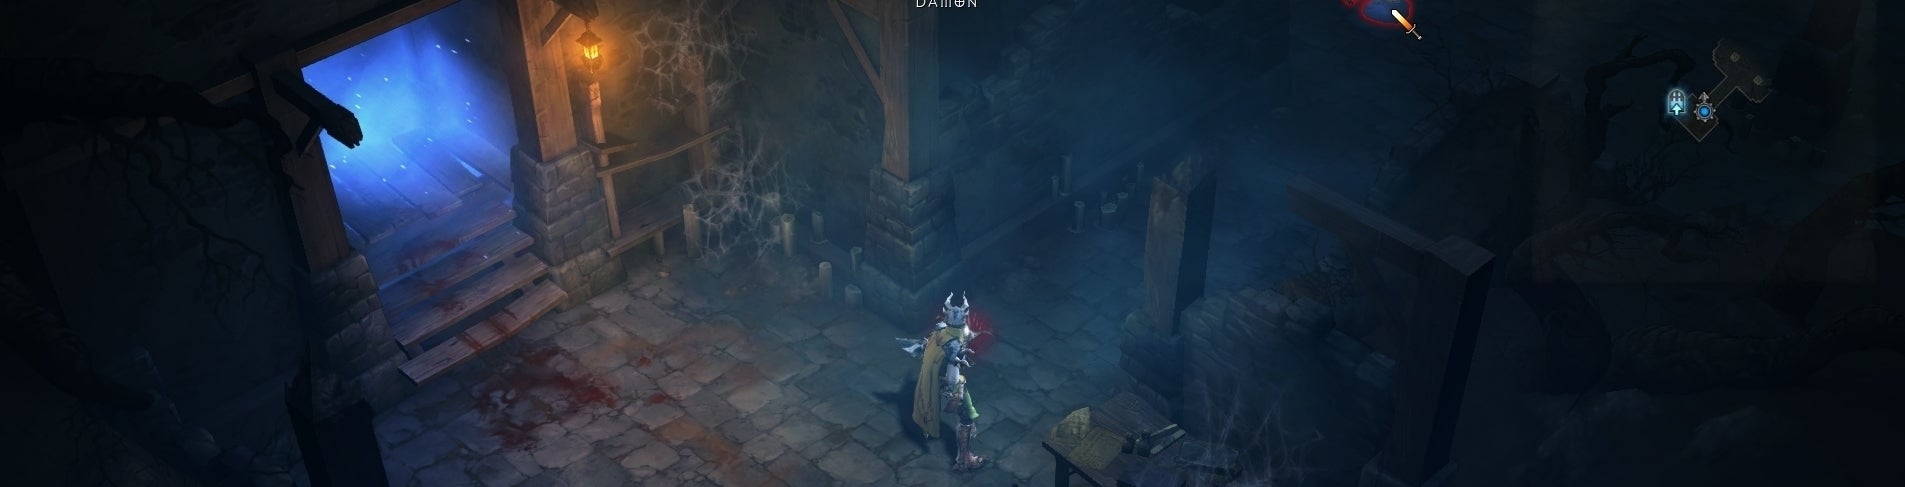 Image for Diablo 3 na PlayStation půjde hrát offline